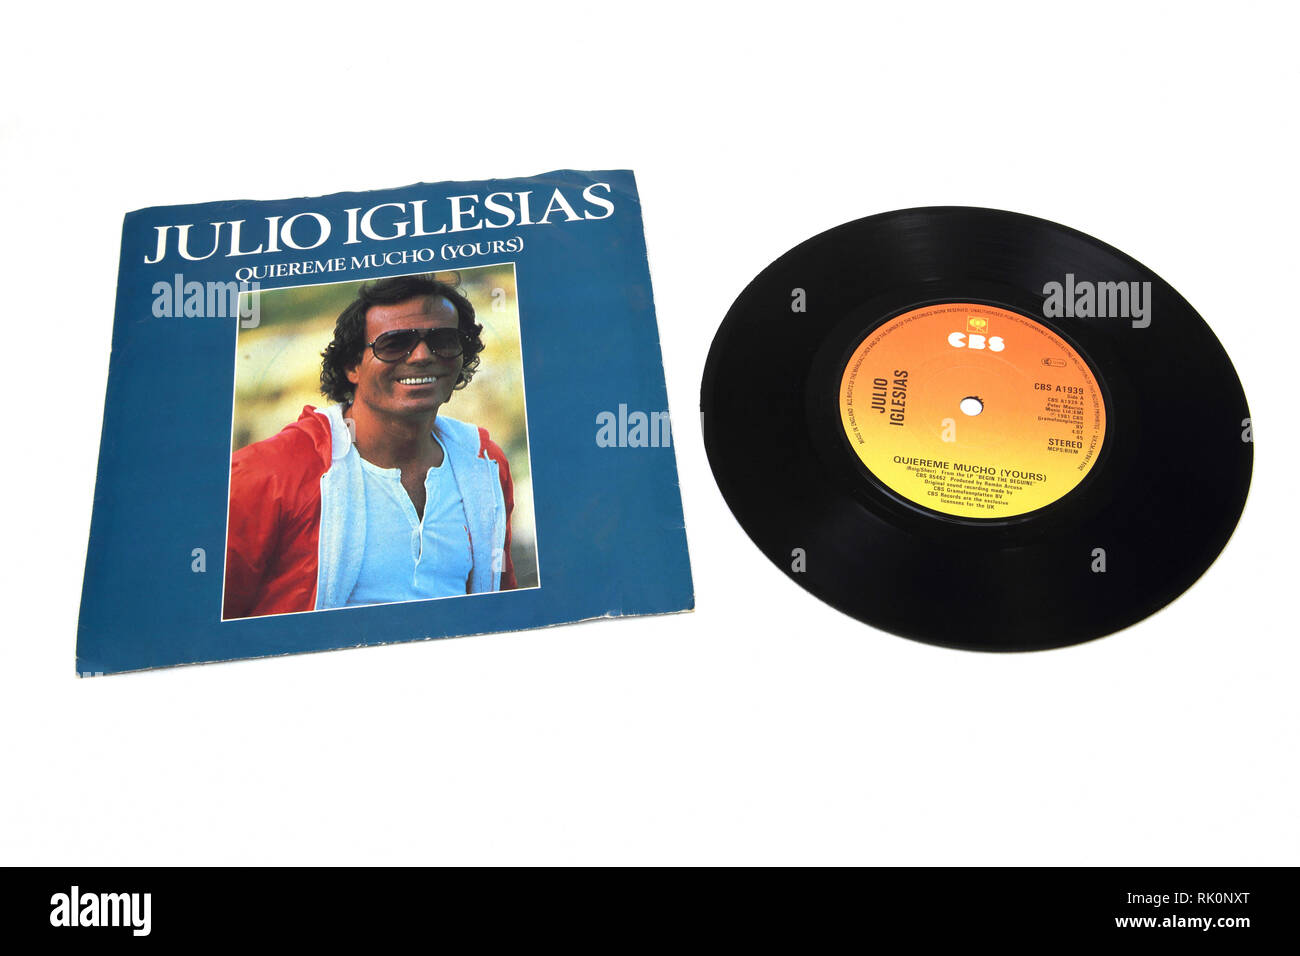 Julio Inglesias Quiereme Mucho (i vostri) singolo record Foto Stock